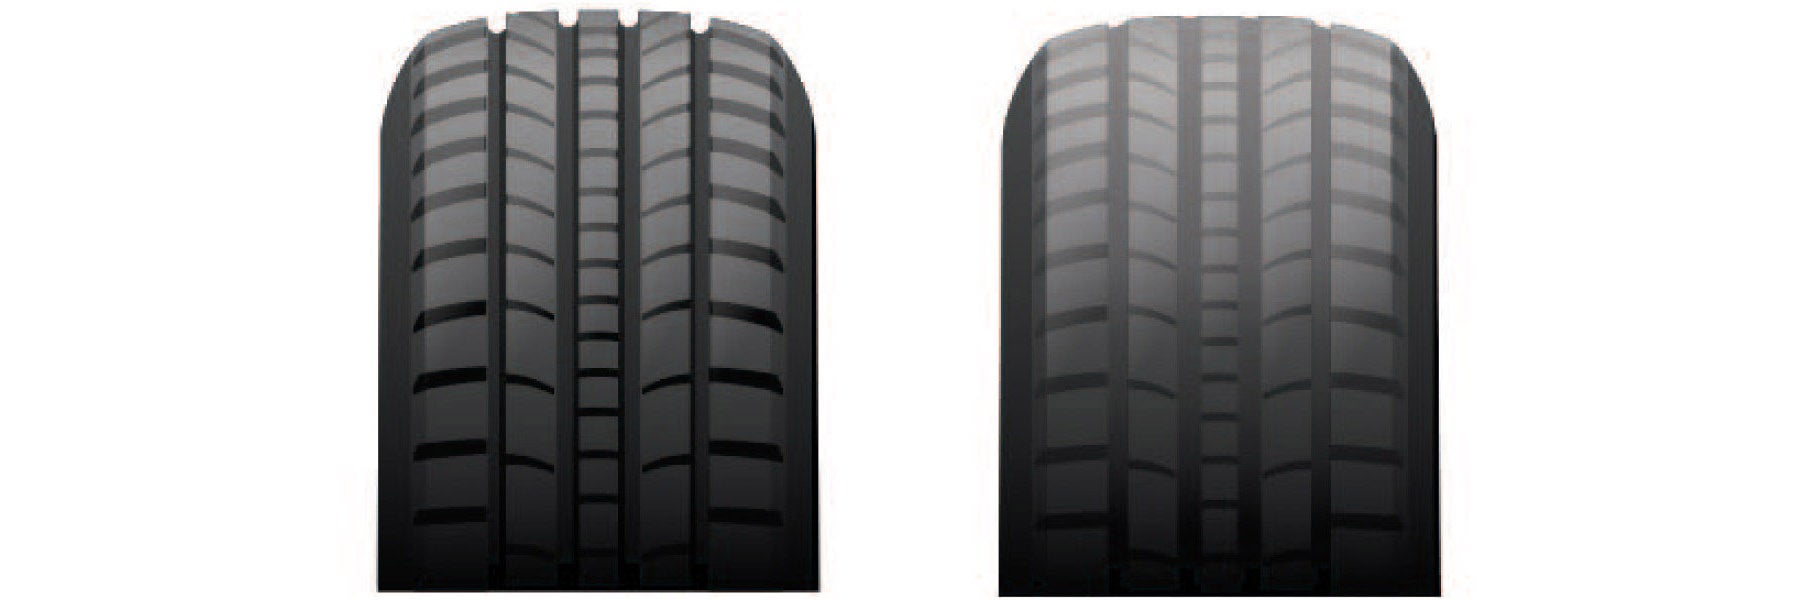 Tire tread depth comparison at Kia of Marin in Novato CA